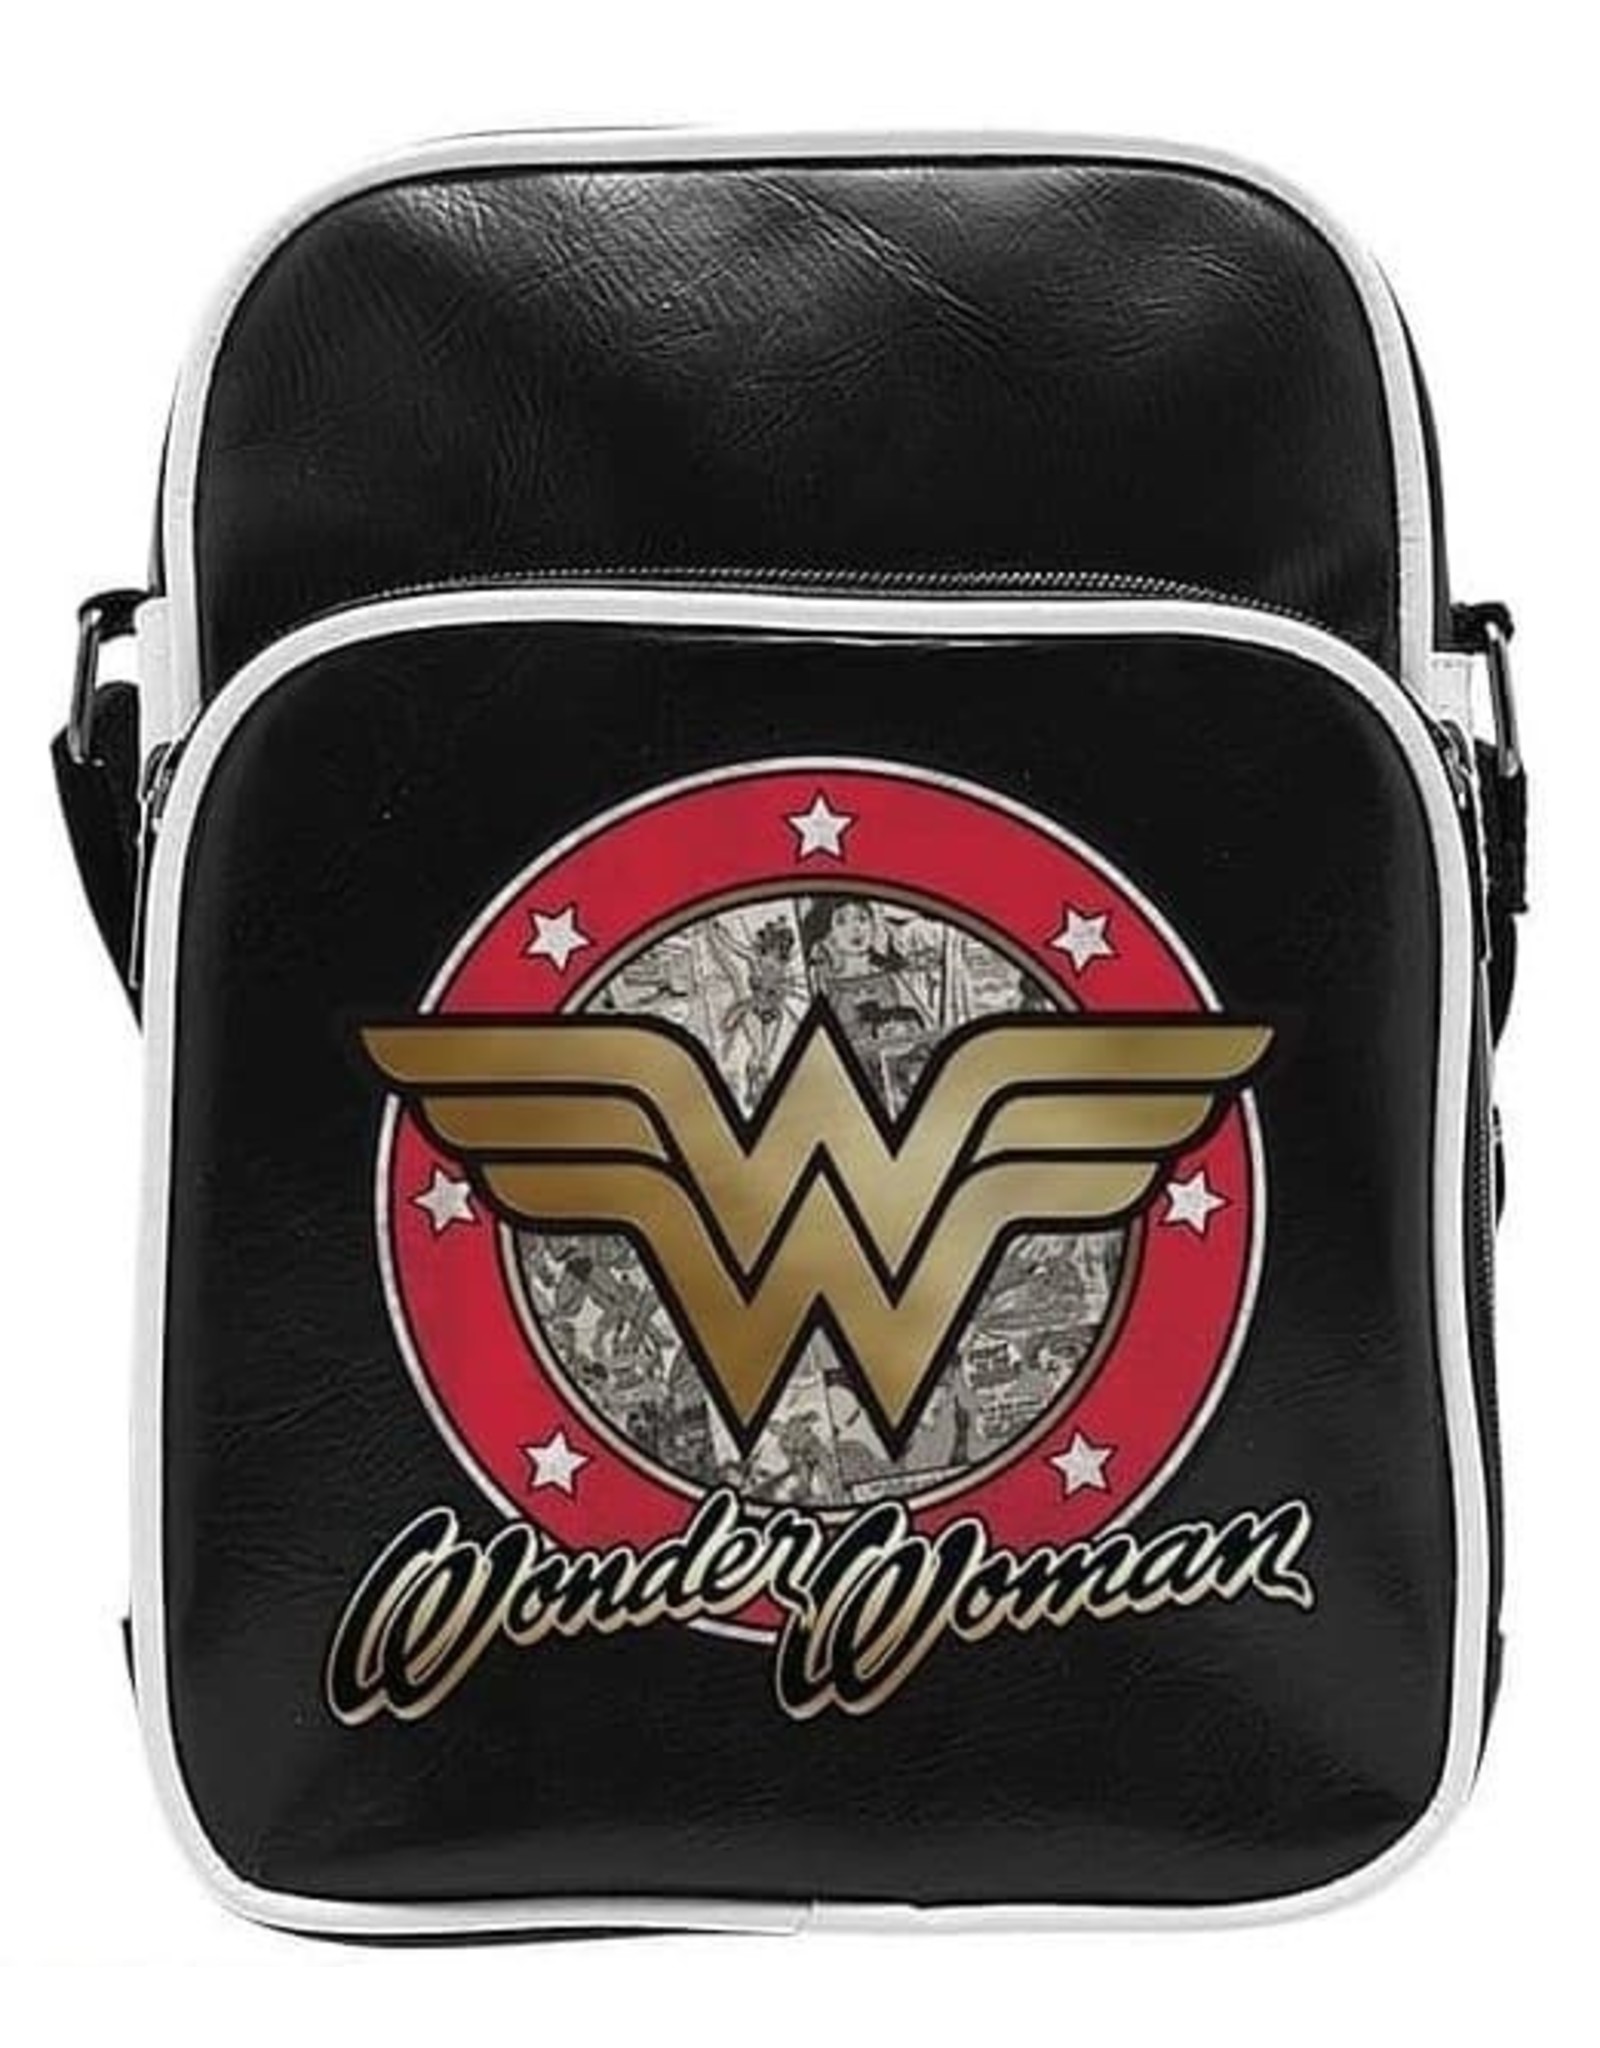 DC Comics Merchsndise bags - DC Comics Wonder Women Shoulder bag